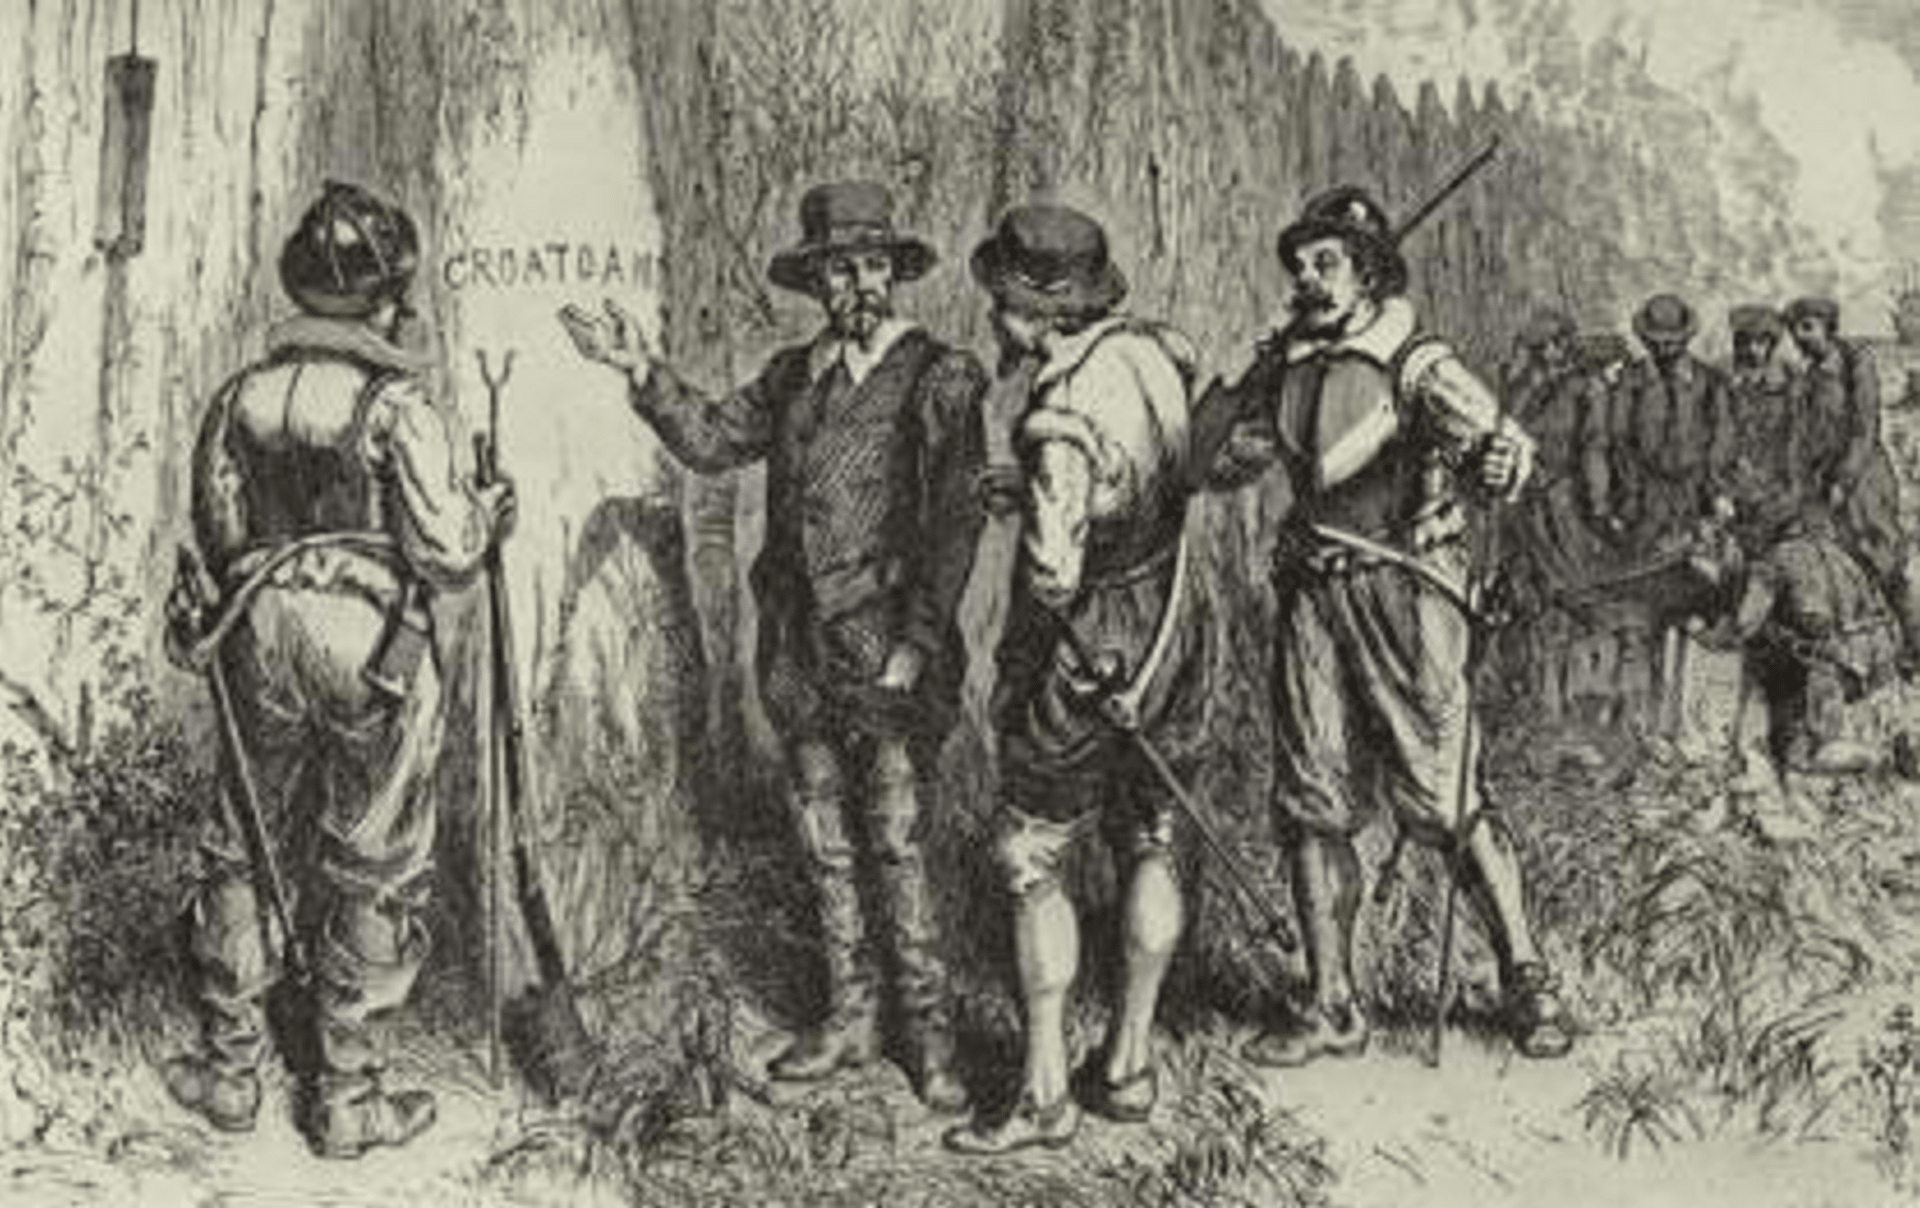 Objev nápisu Croatan v ilustraci 19. století